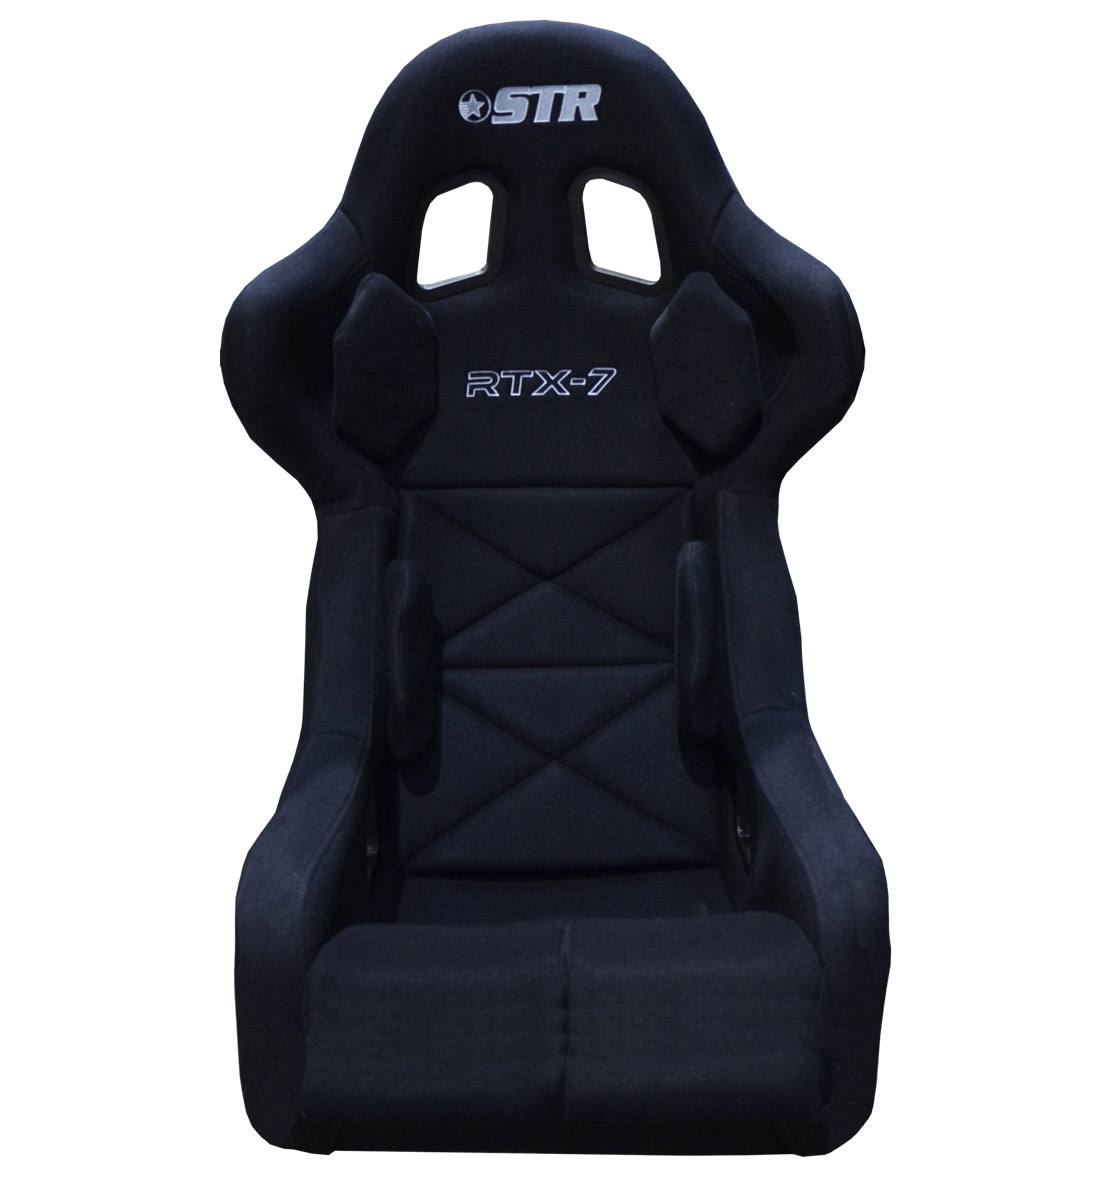 STR 'RTX-7' FIA Approved Race Seat - 2028 Black